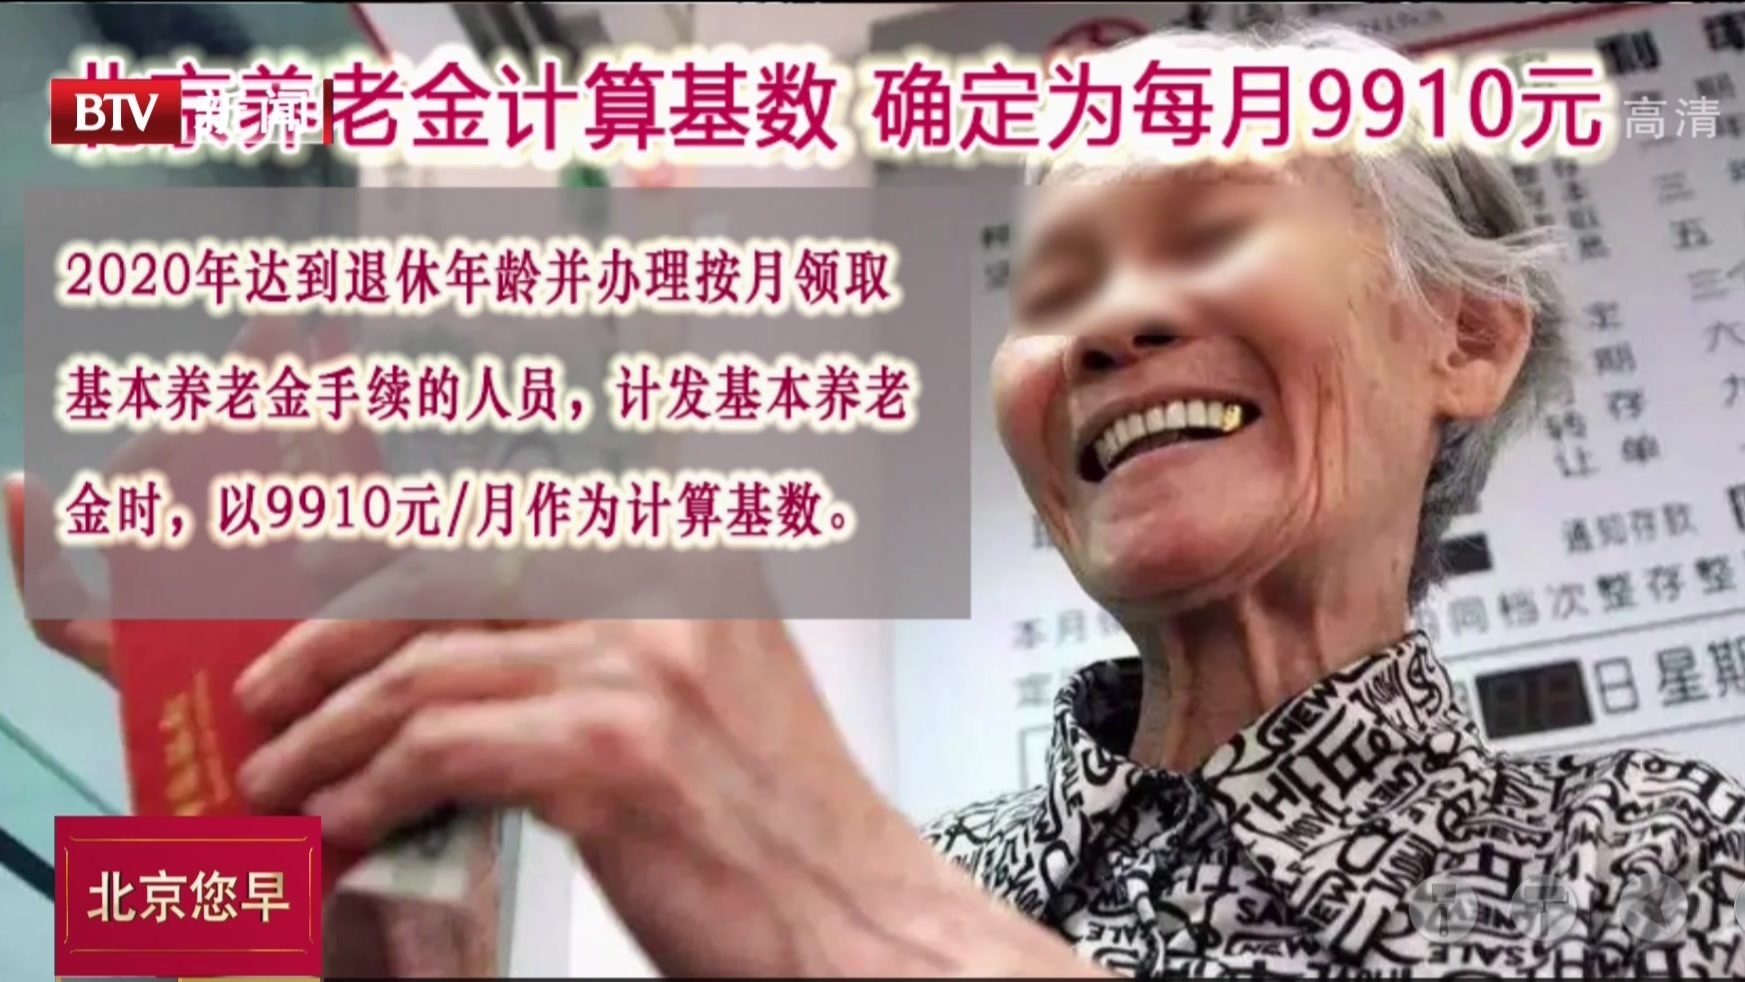 北京养老金计算基数  确定为每月9910元